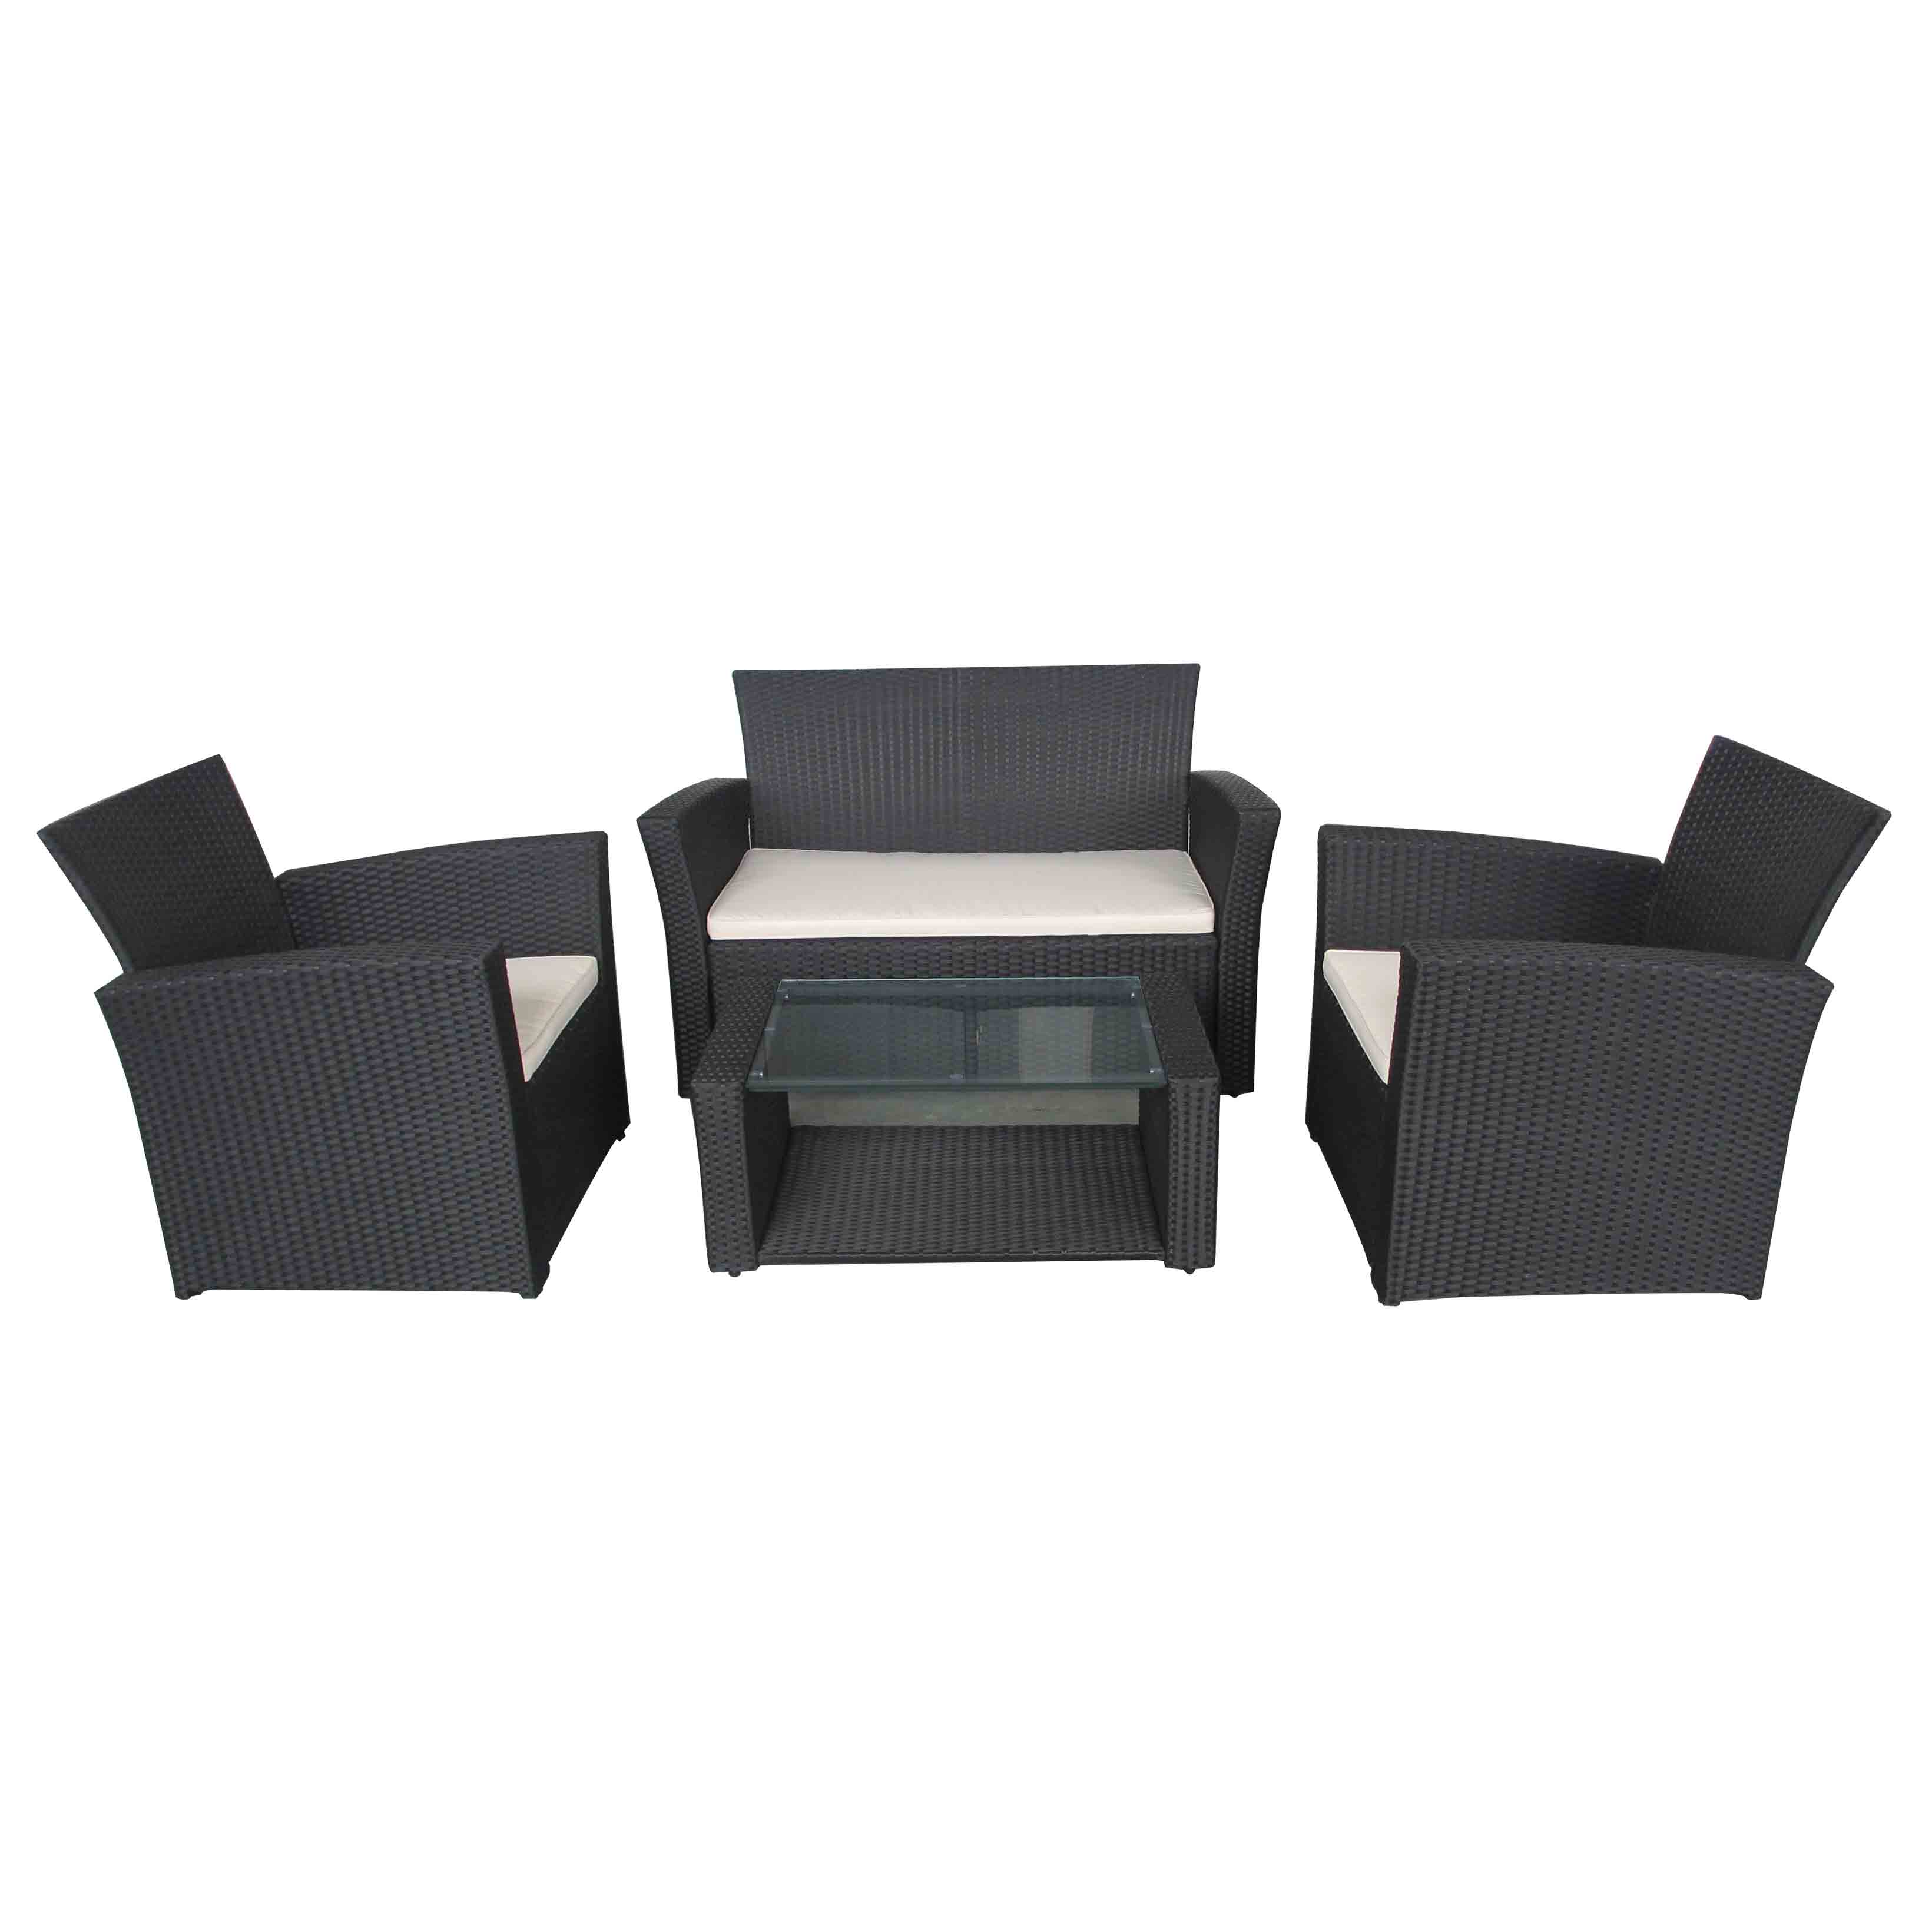 JJX3001W-1 Steel frame rattan 4pcs sofa set Featured Image